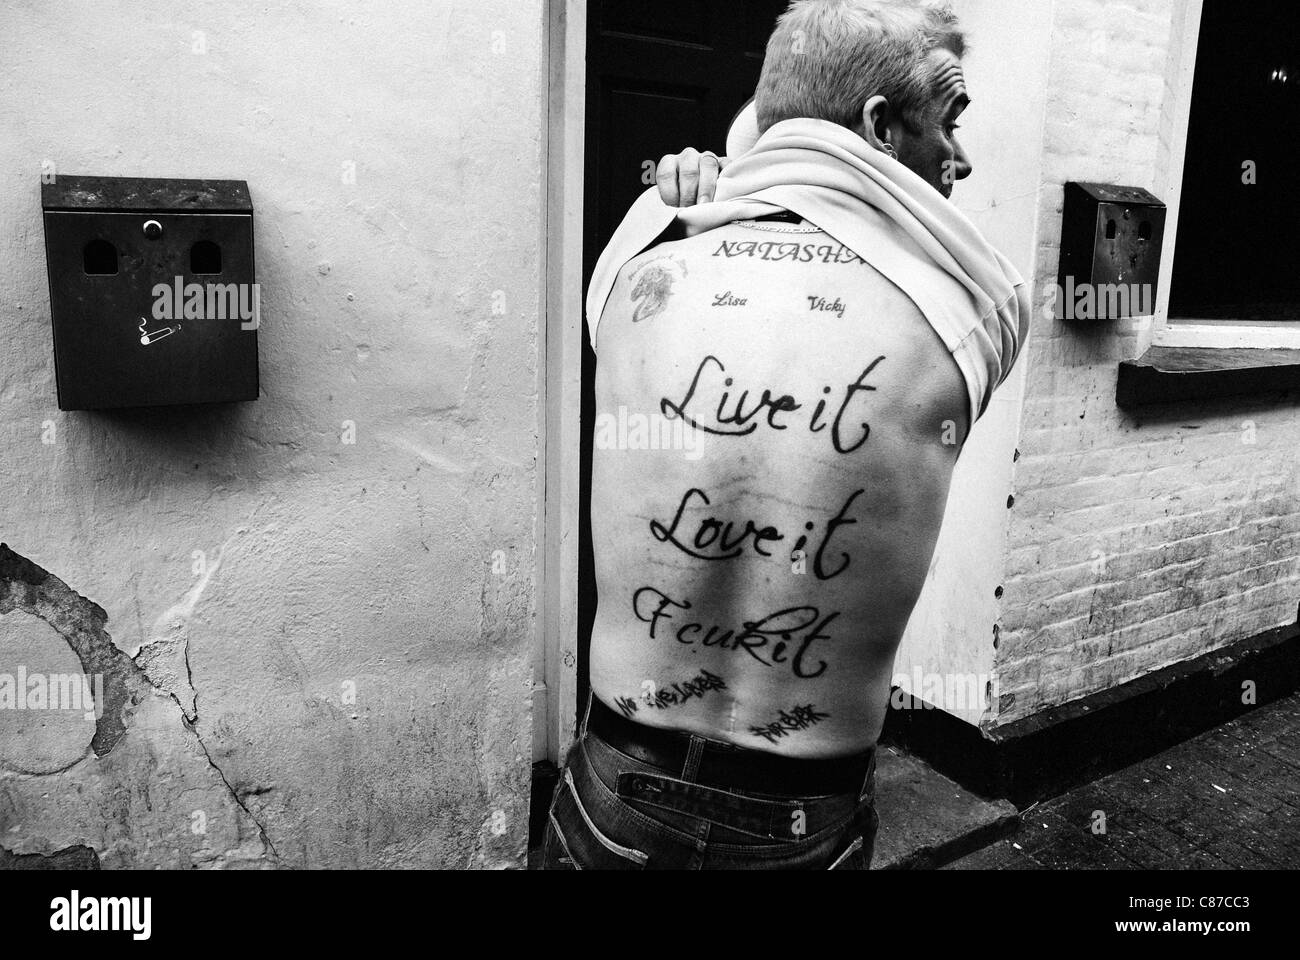 Tätowierte Mann vor Pub mit Aufschrift "Live it, Love it, Fcuk es ', B&W Straße gedreht un gestellt Stockfoto